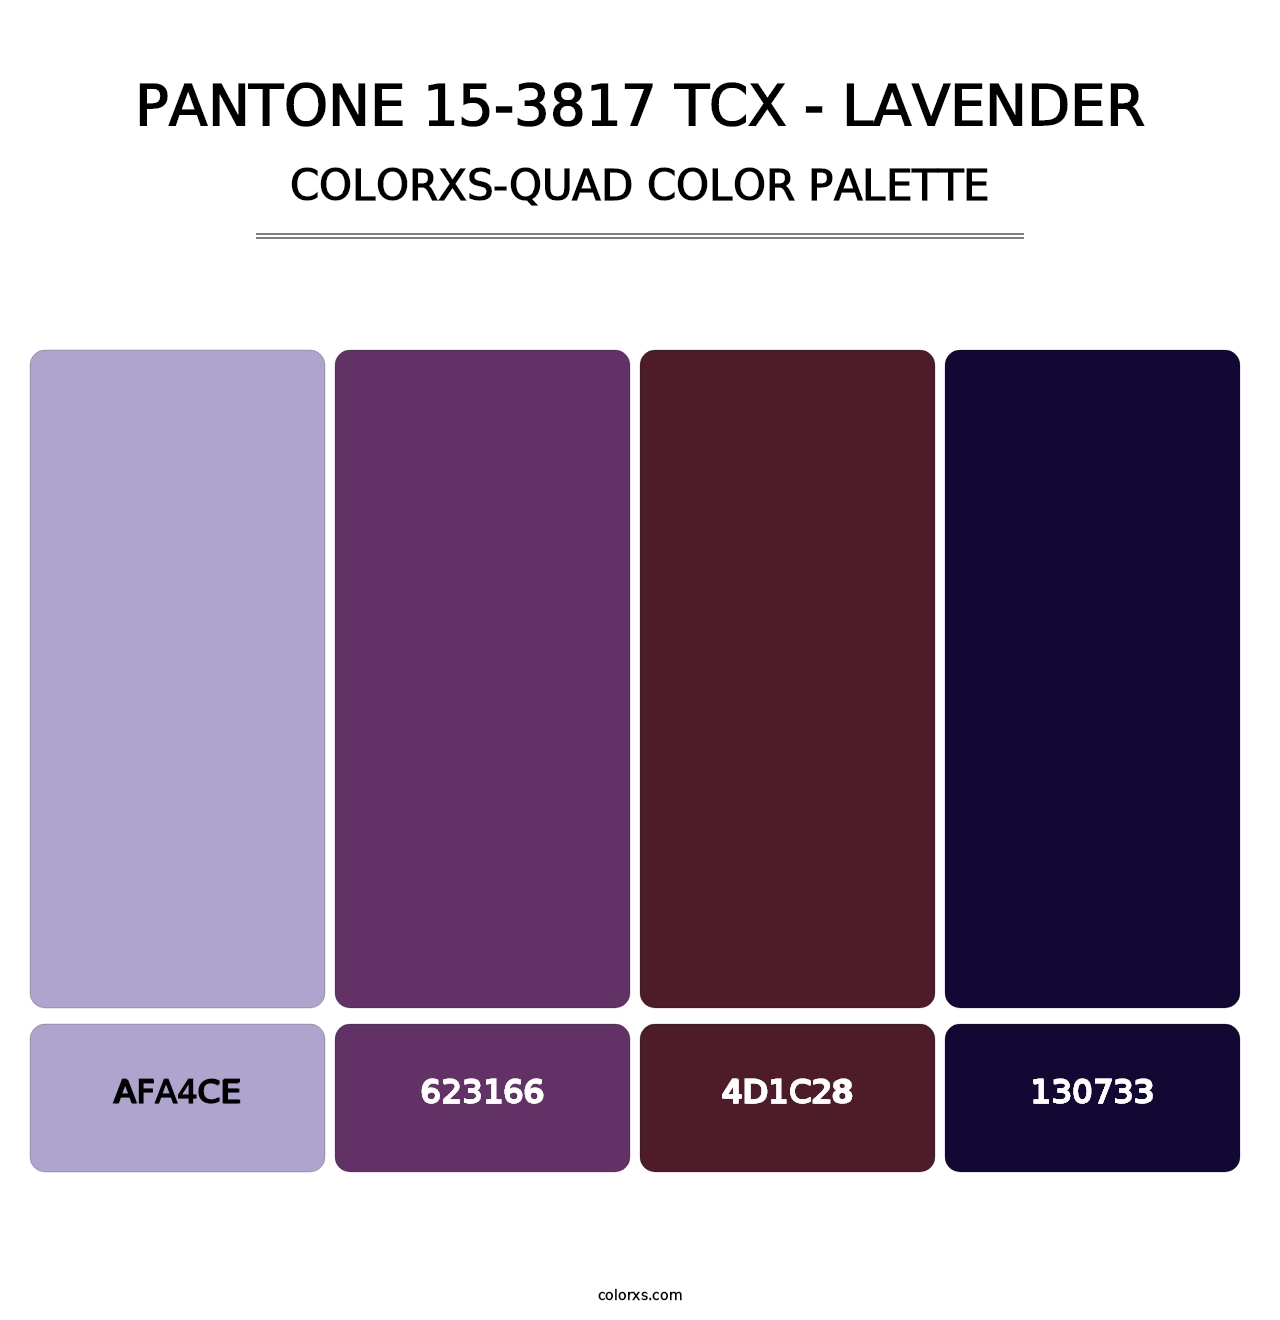 PANTONE 15-3817 TCX - Lavender - Colorxs Quad Palette